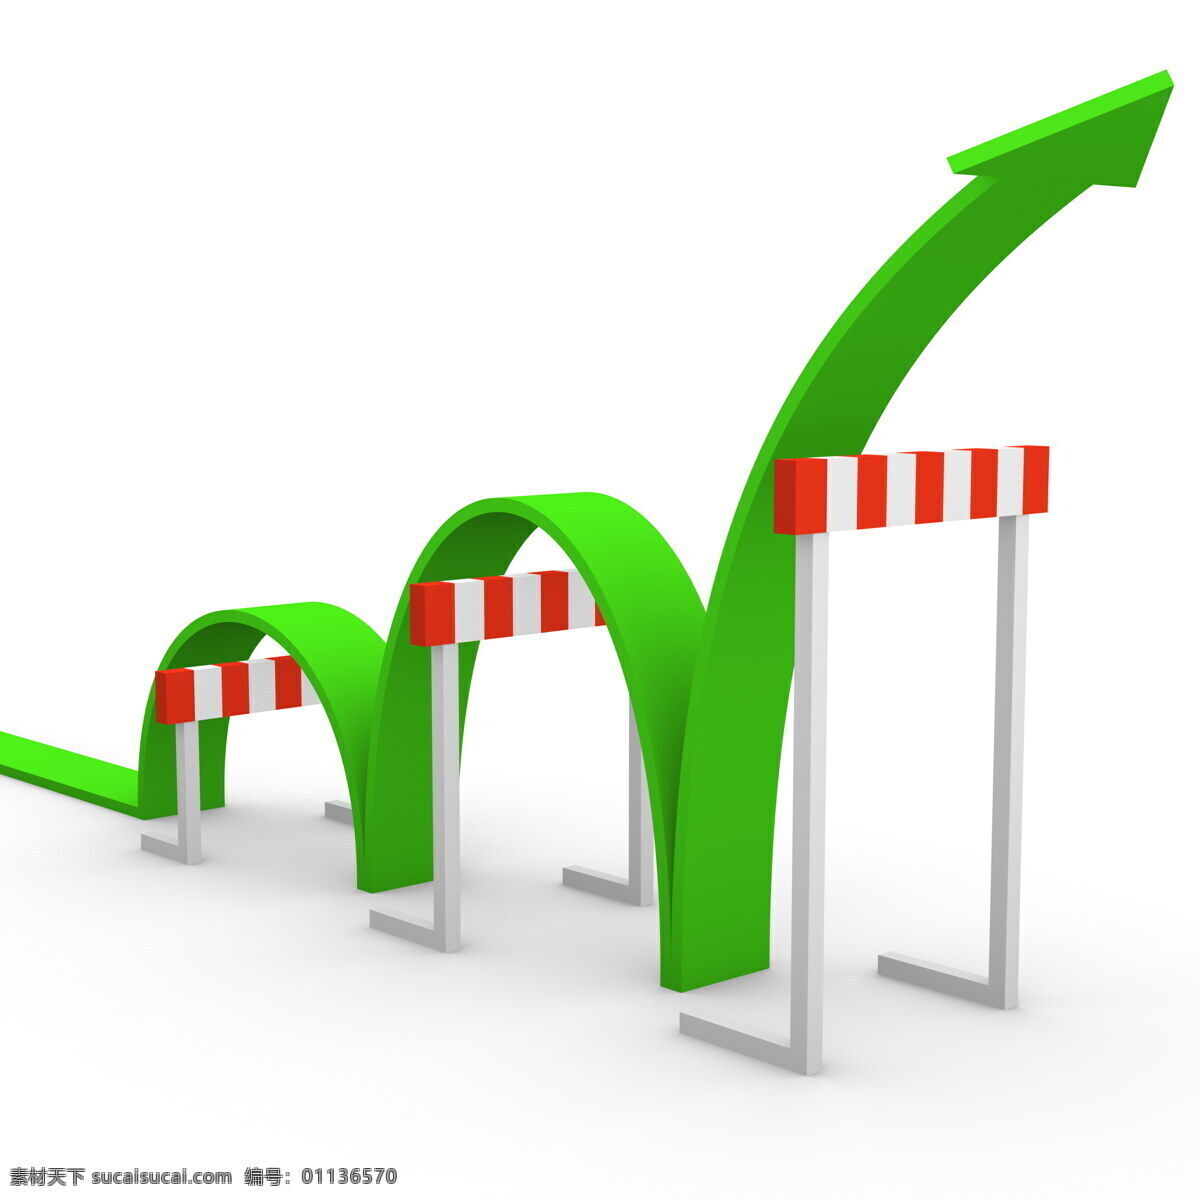 跨栏 绿色 箭头 绿色箭头 上升 成功 现代商务 商务科技 其他类别 商务金融